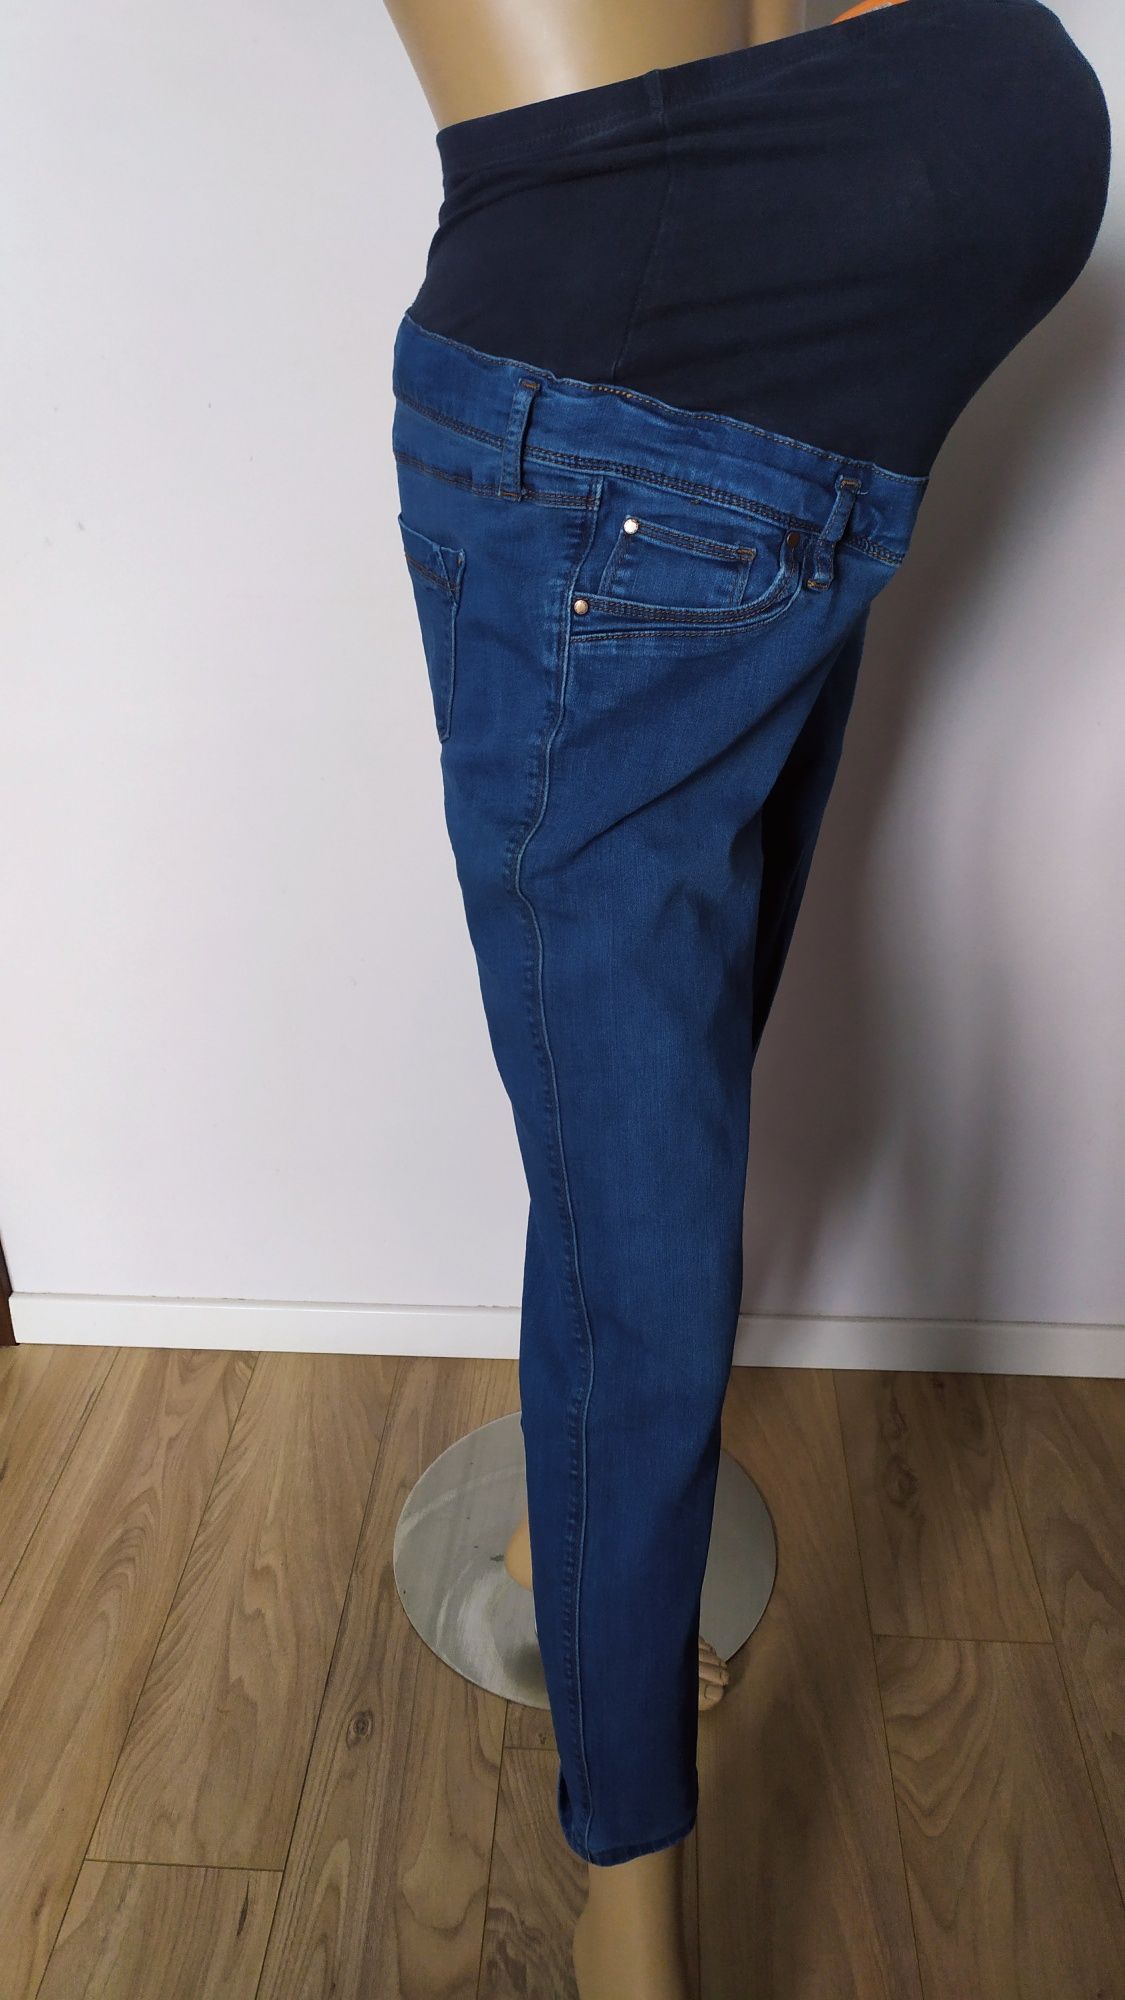 SG spodnie ciążowe 38 , M , jeansy ciążowe 38 , M dżinsy ciążowe 38.